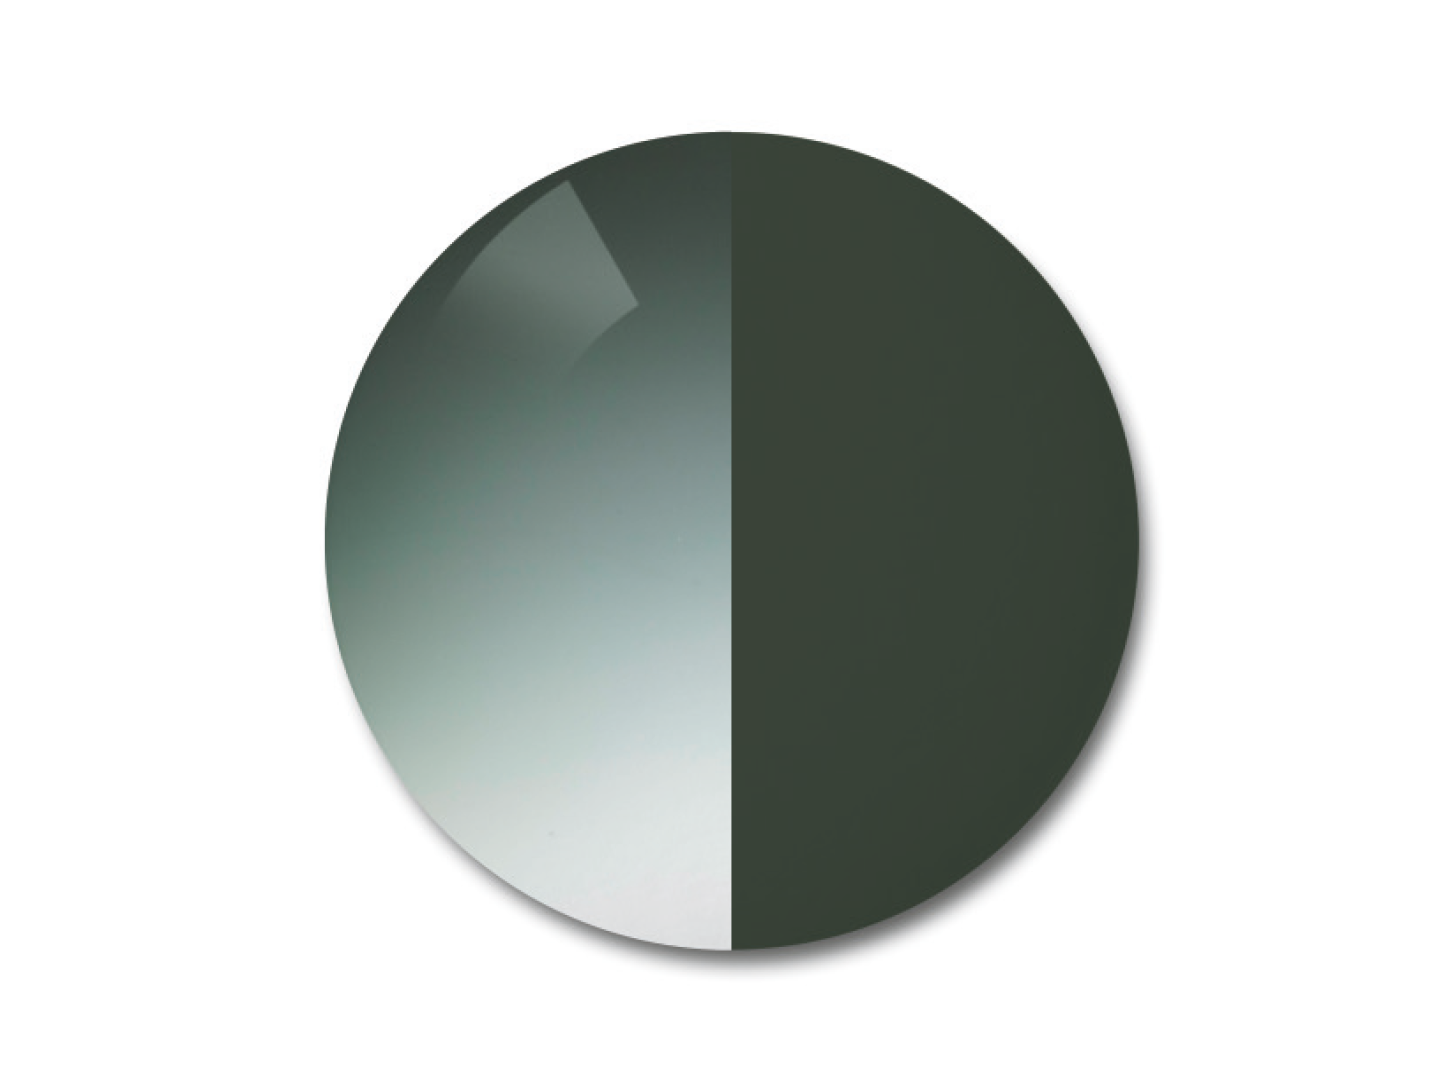 자이스 어댑티브선 변색 렌즈 중 그라데이션 파이오니아 컬러를 보여주는 이미지 